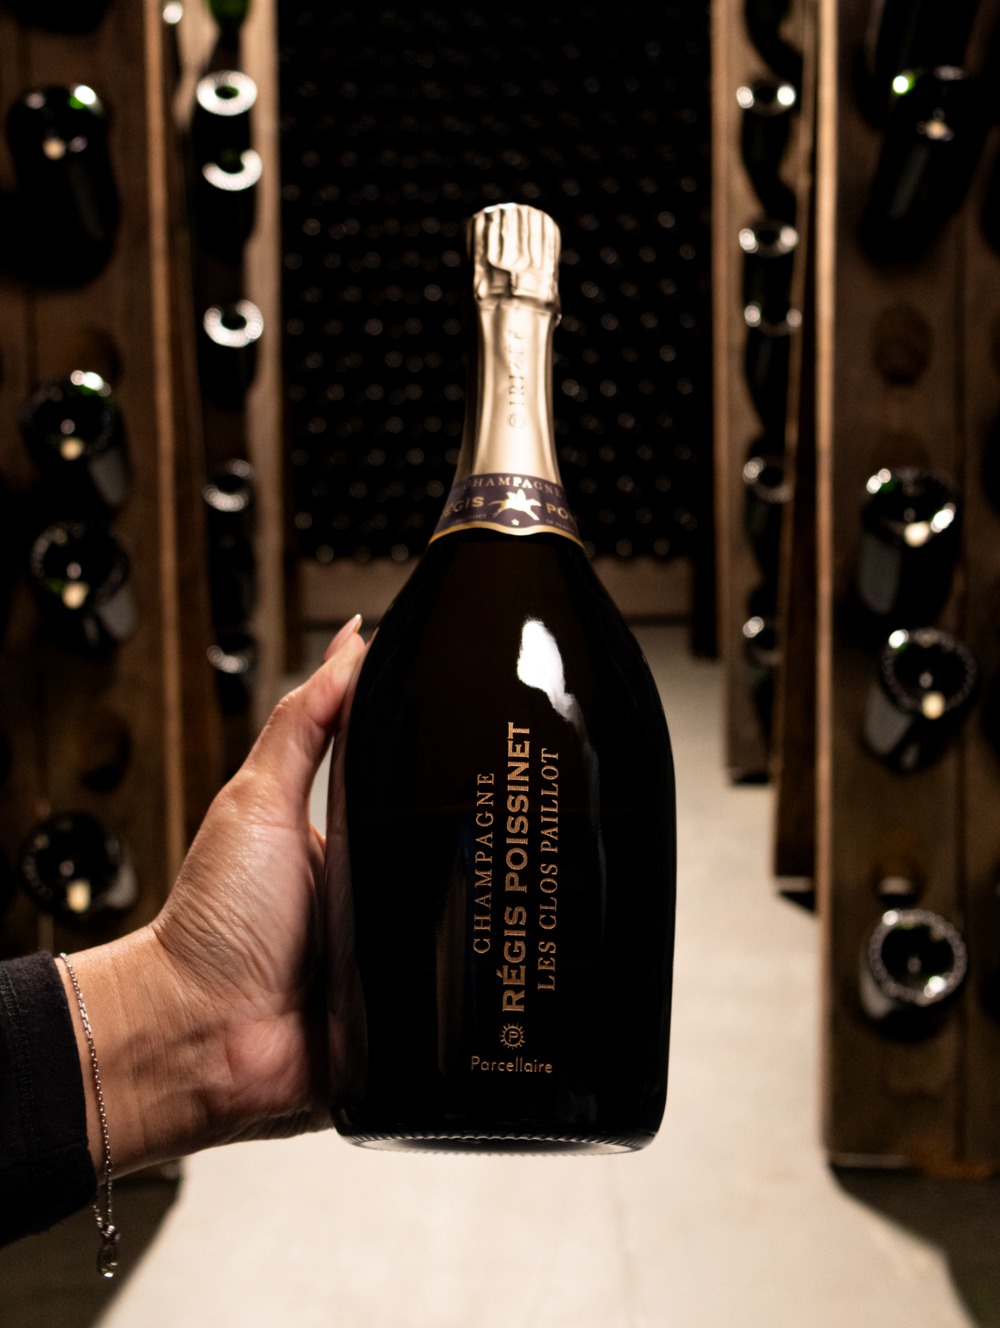 Champagne Régis Poissinet Blanc de Noirs Les Clos Paillot Extra Brut 2017